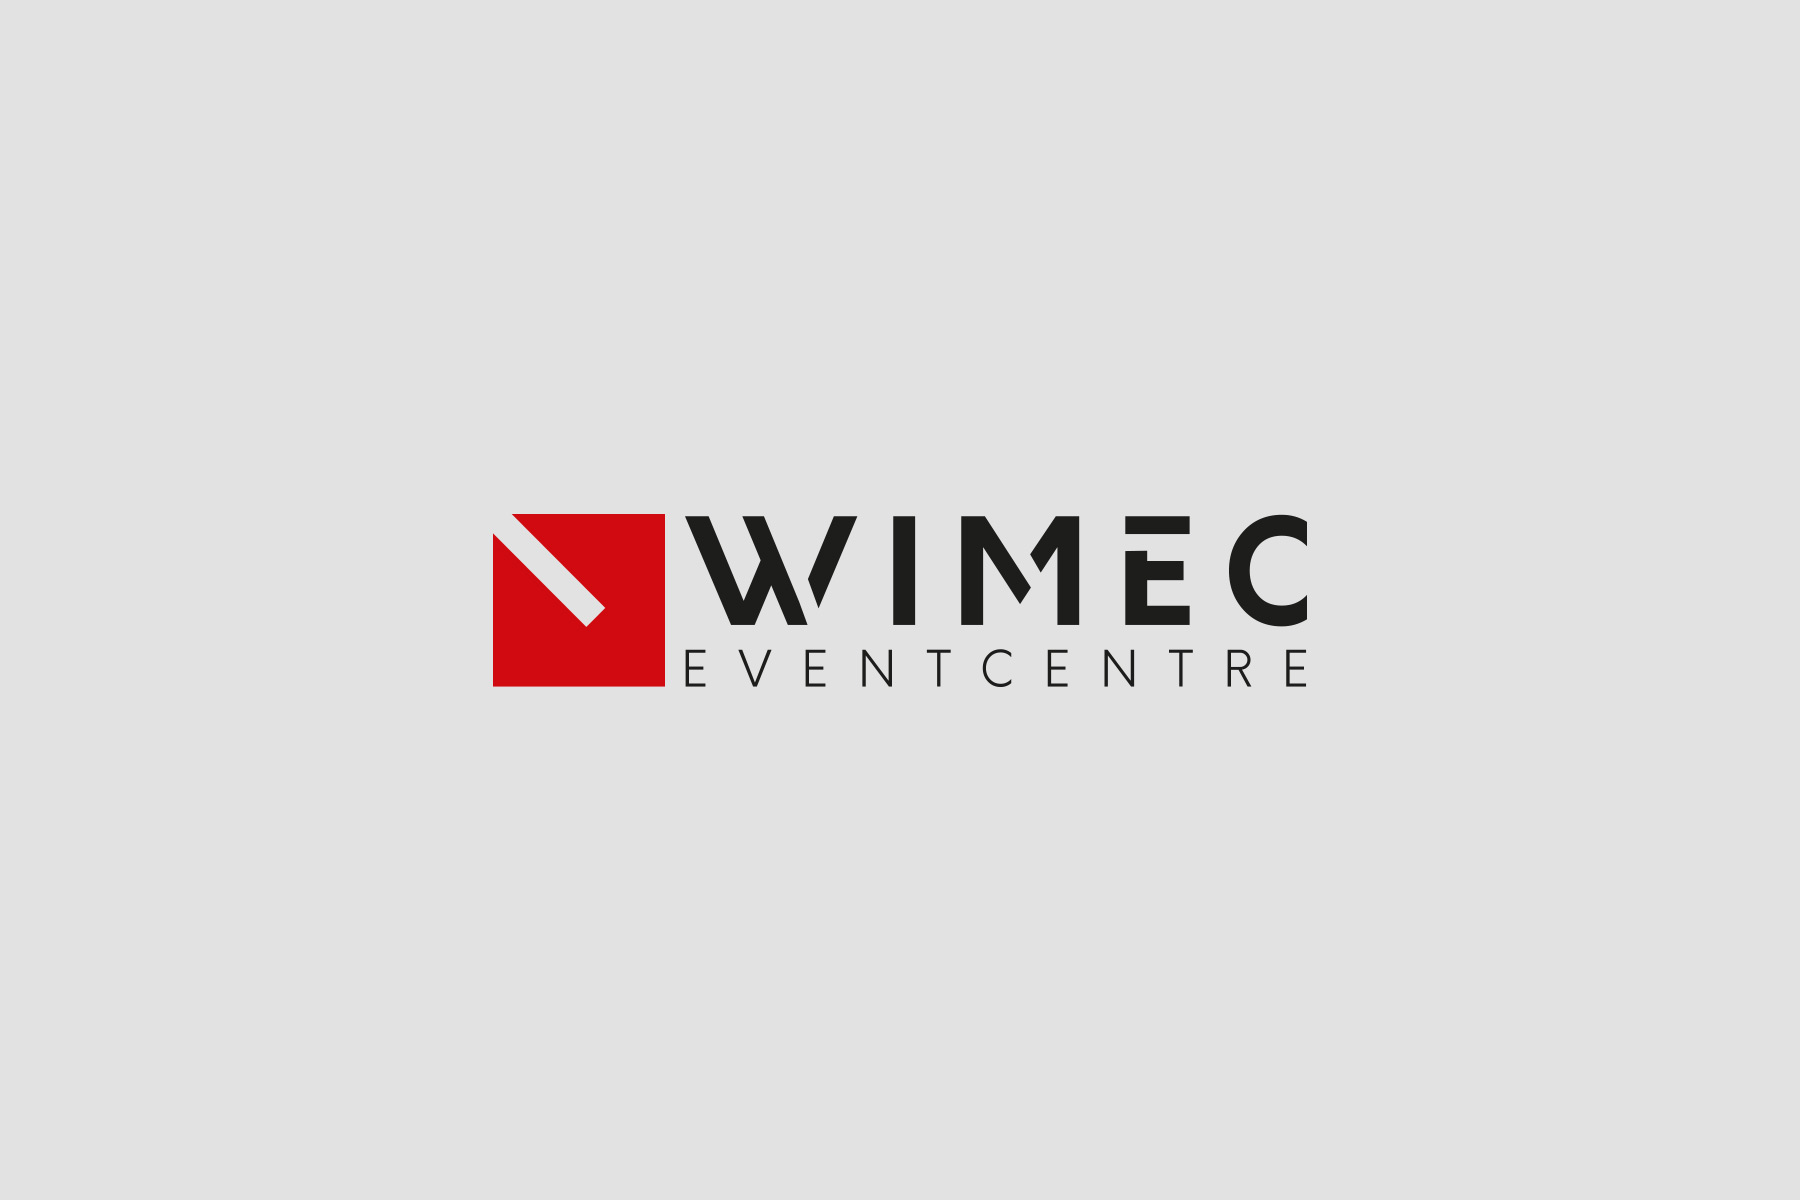 wimec eventcentre